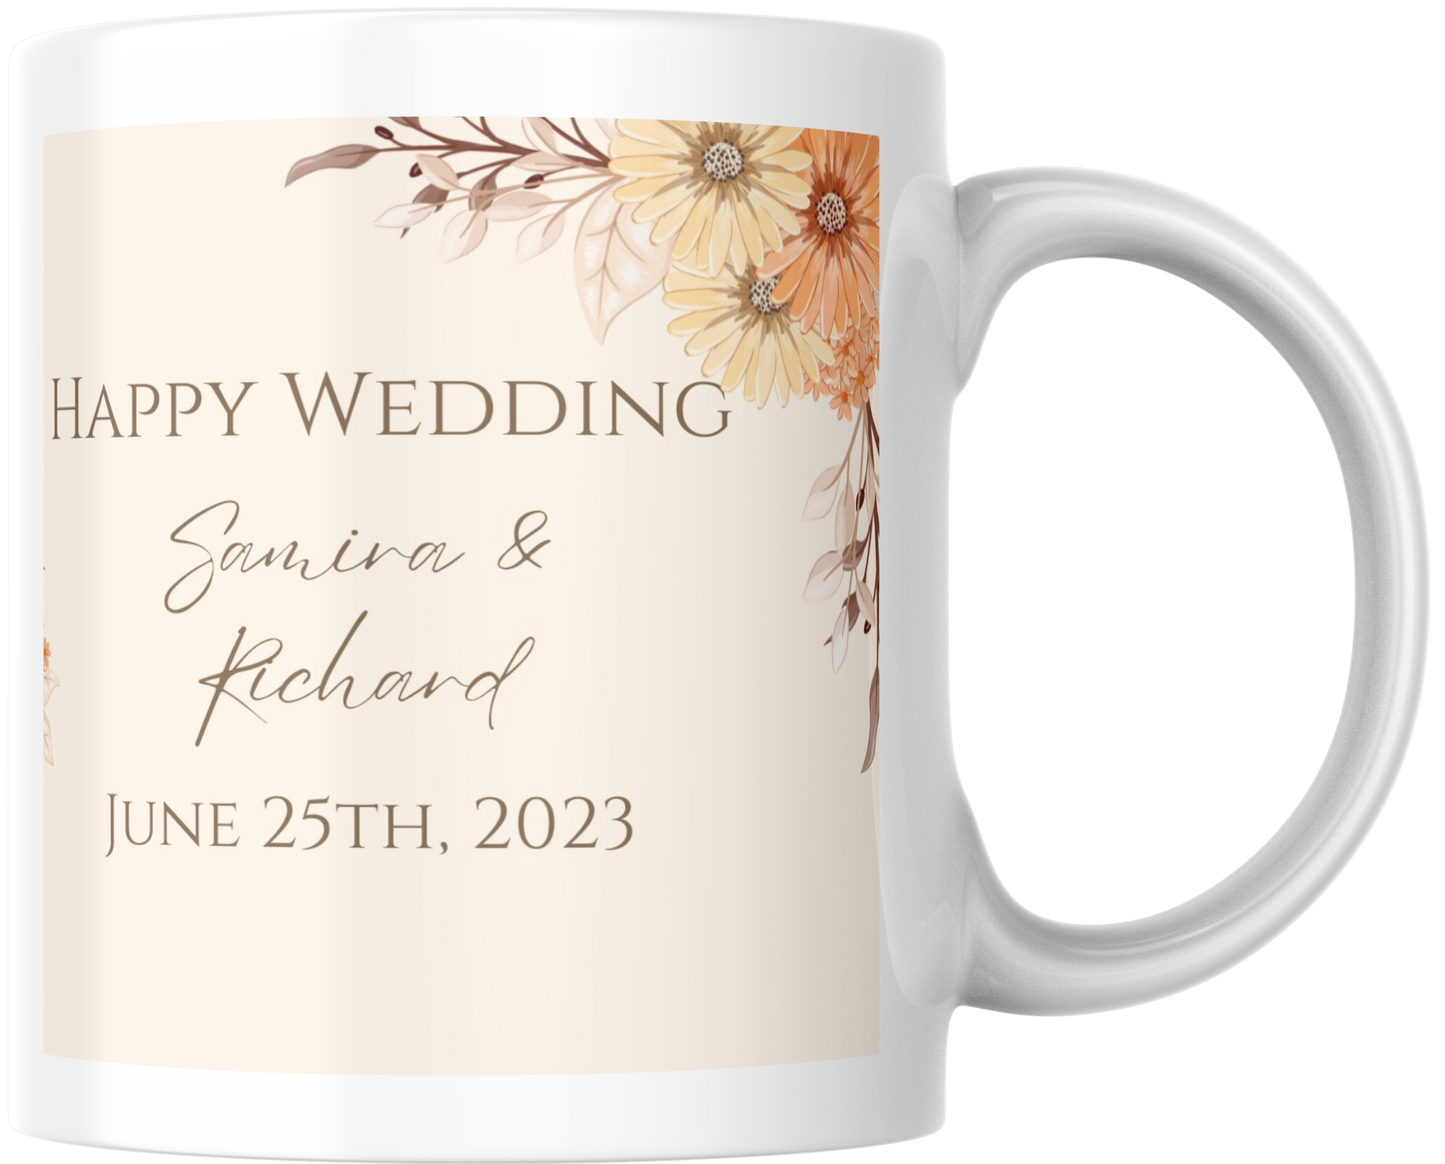 Personalised wedding mug gift set